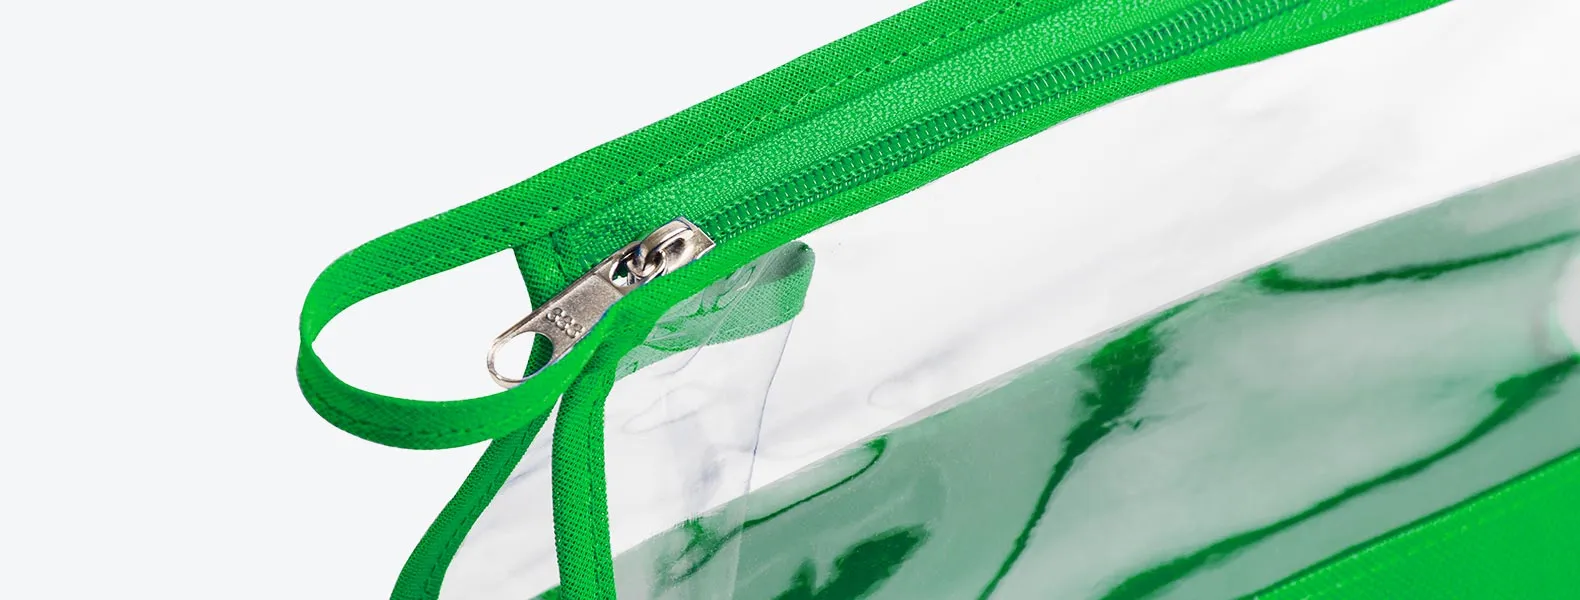 Necessaire na cor verde transparente confeccionada em PVC / Nylon 600. Conta com fechamento em zíper e alça. Disponível nas cores preta, azul, vermelha e verde.